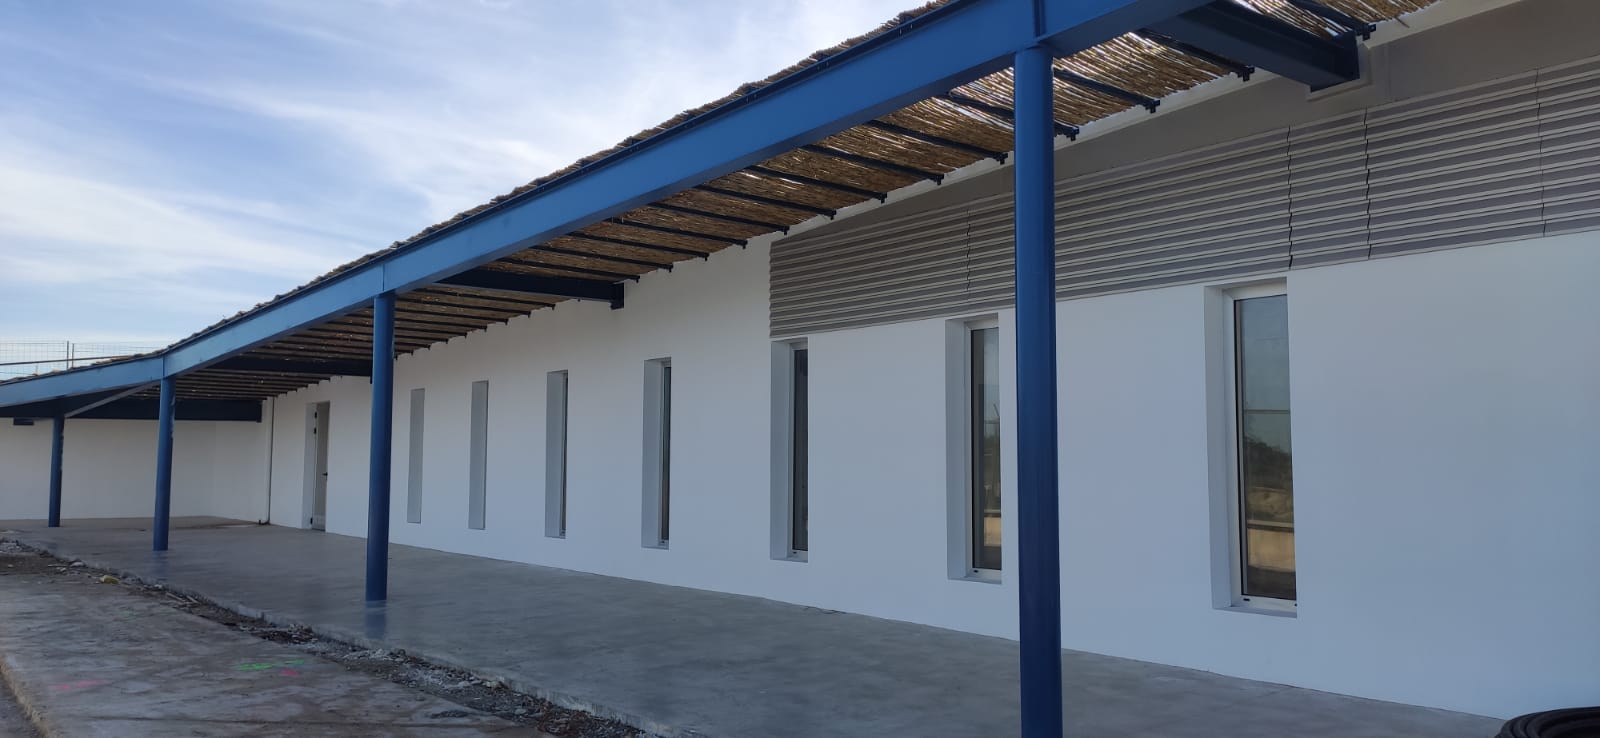 Der Hafen von La Savina hat ein neues Gebäude für den Fischerverband von Formentera